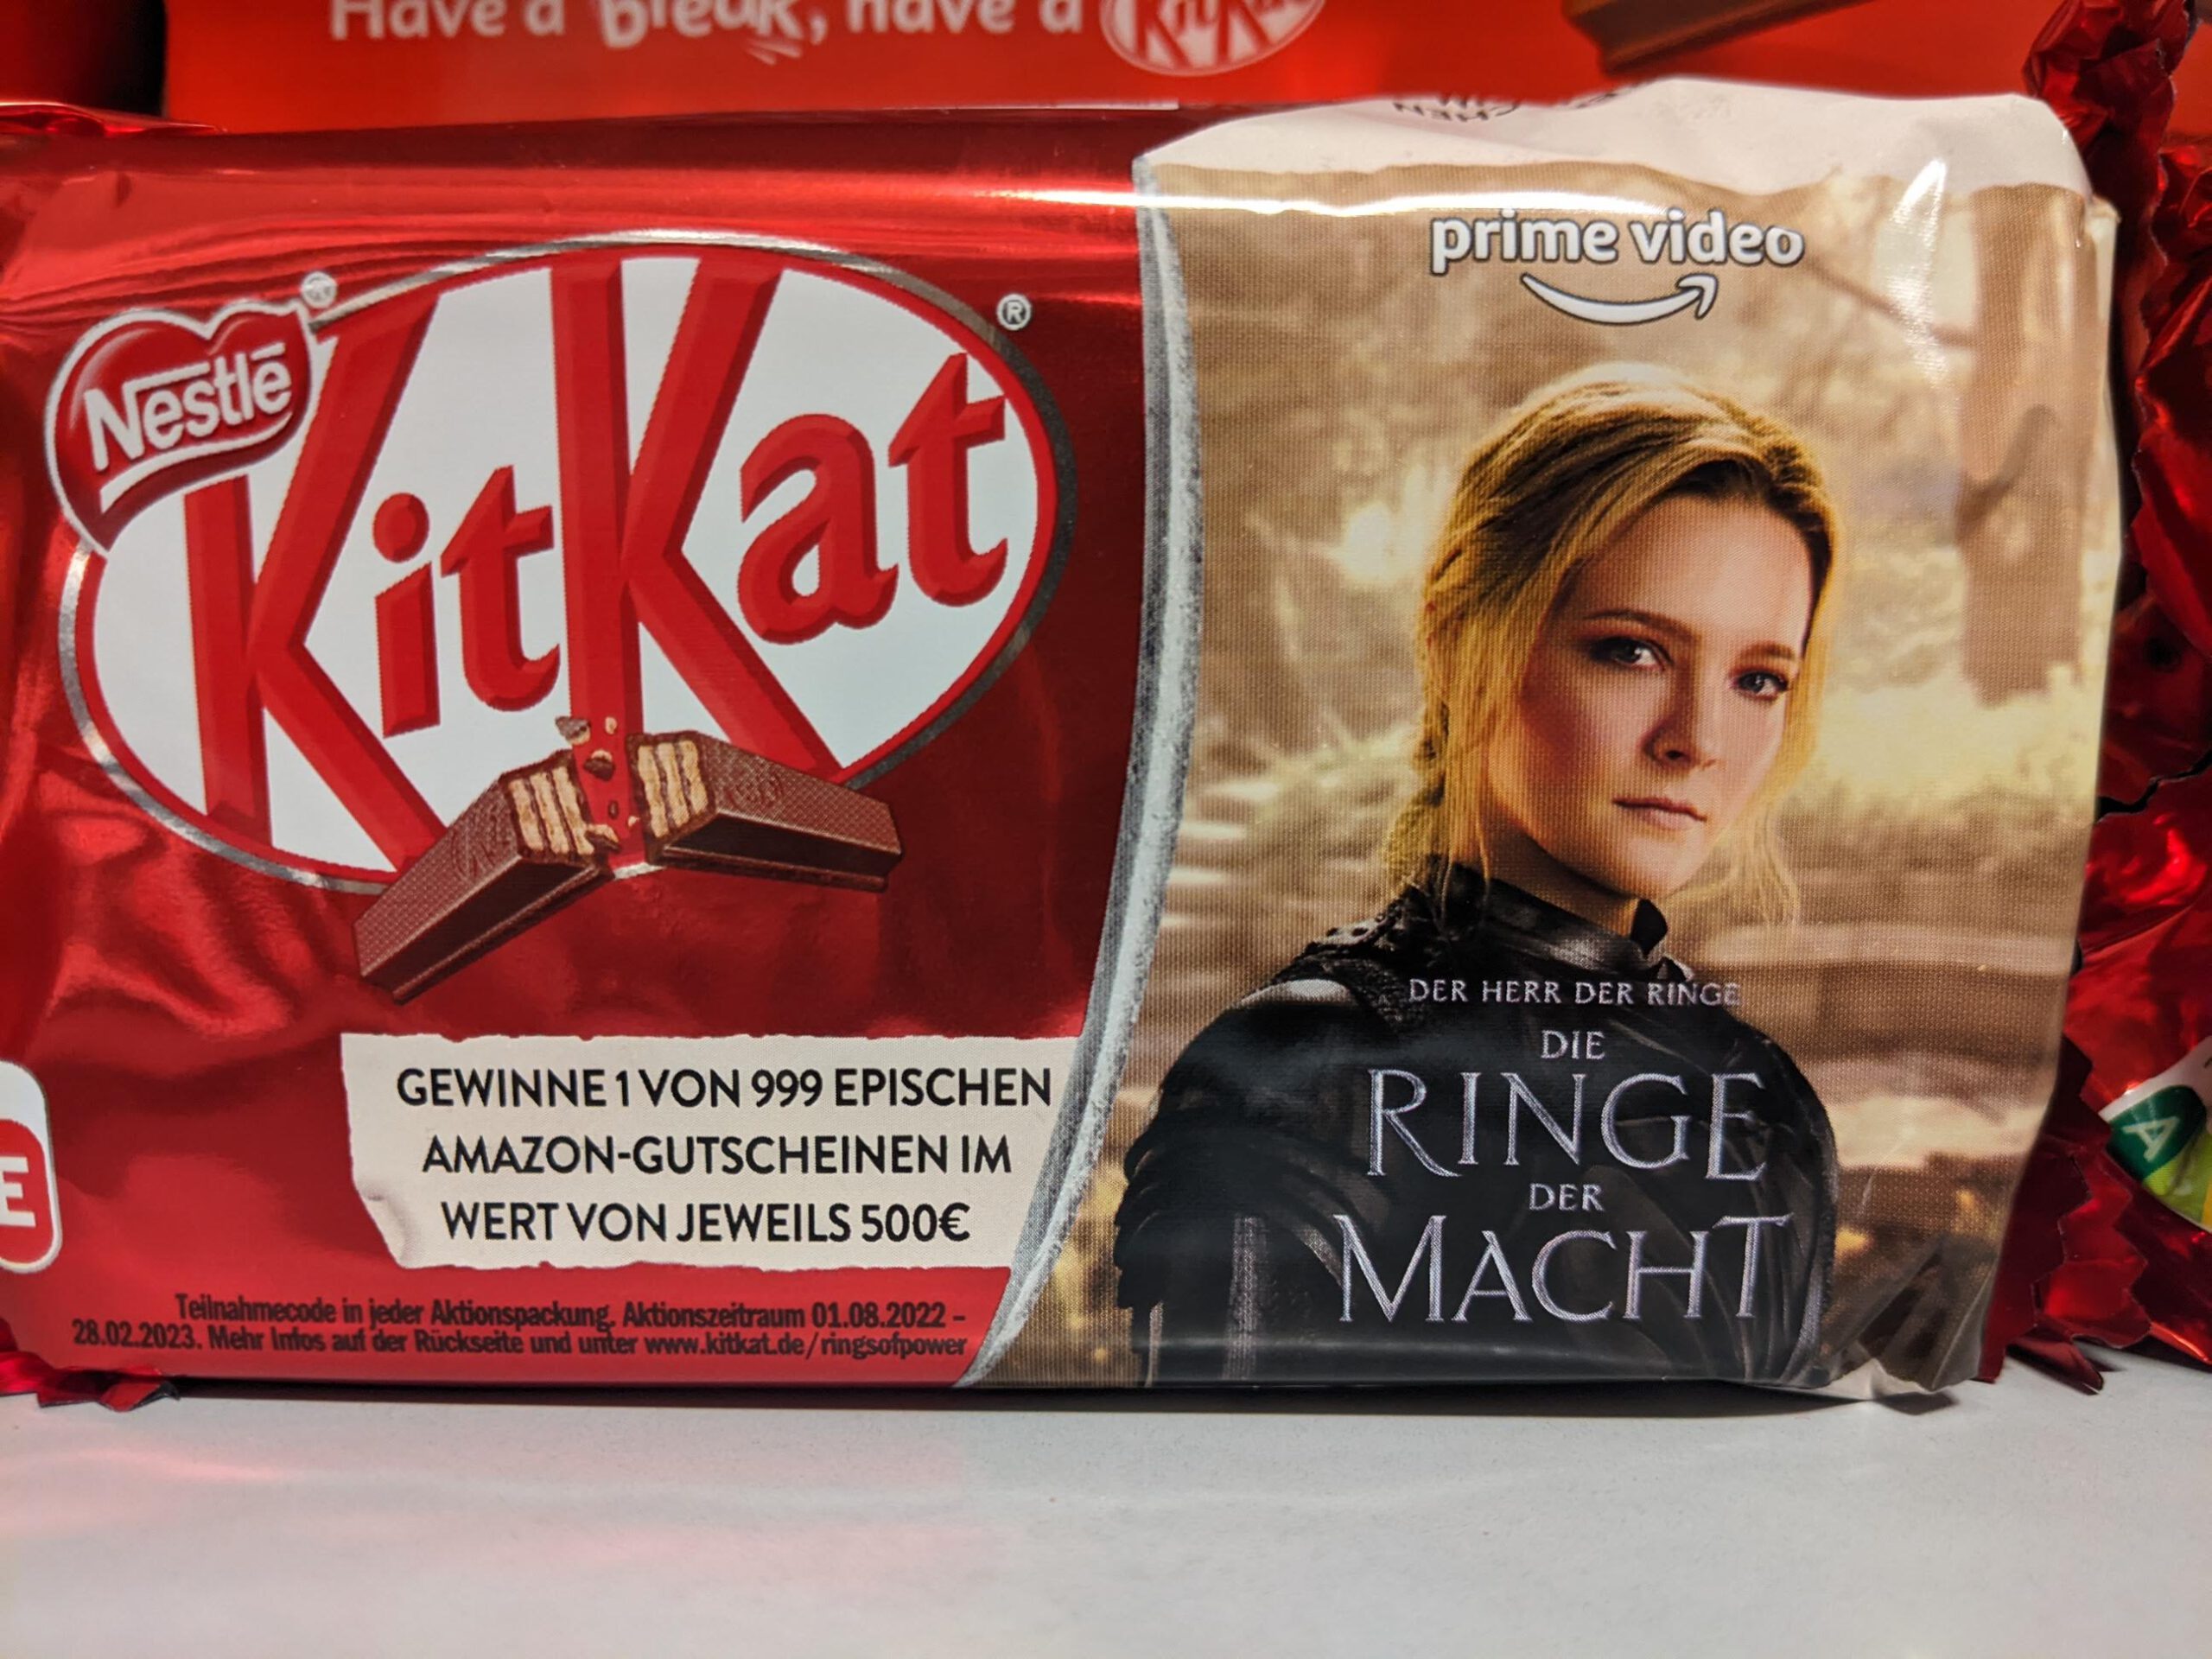 KitKat & Lion: Herr der Ringe - 500 Euro Amazon-Gutschein gewinnen - Code eingeben